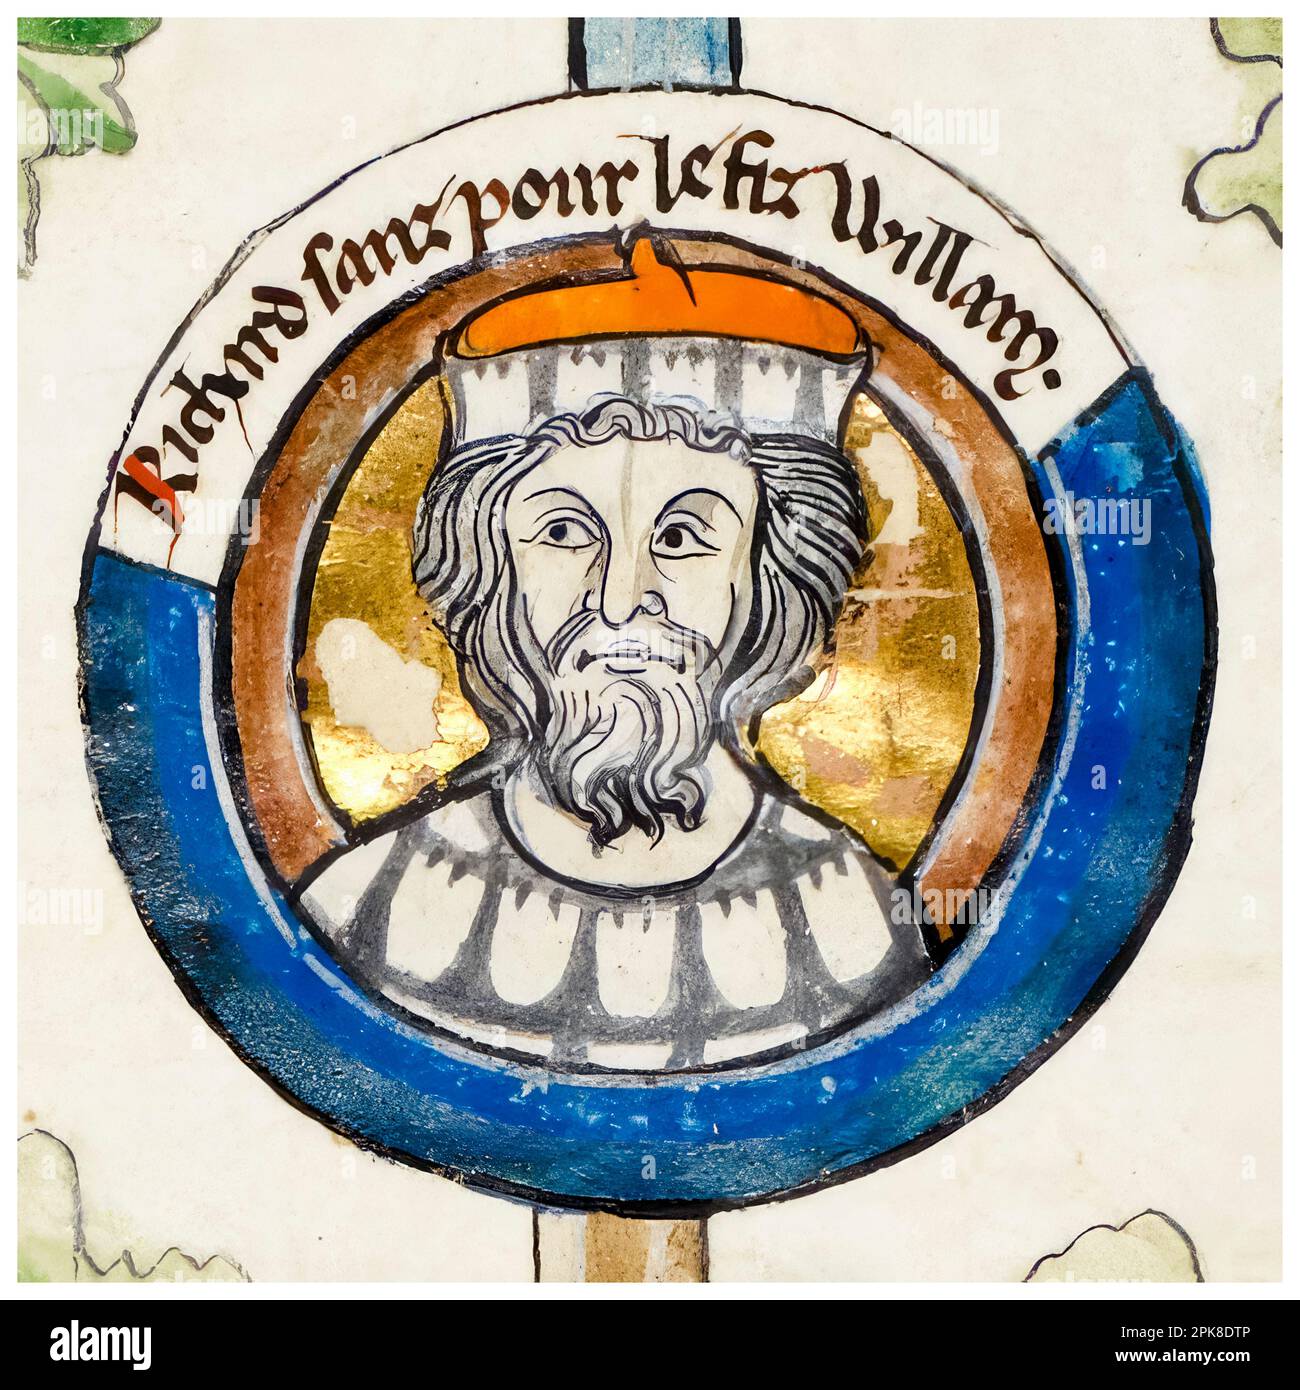 Richard I. aus der Normandie (932-996), auch bekannt als Richard der Furchtlose, war der Graf von Rouen (942-996), beleuchtetes Manuskript-Porträtgemälde, vor 1399 Stockfoto